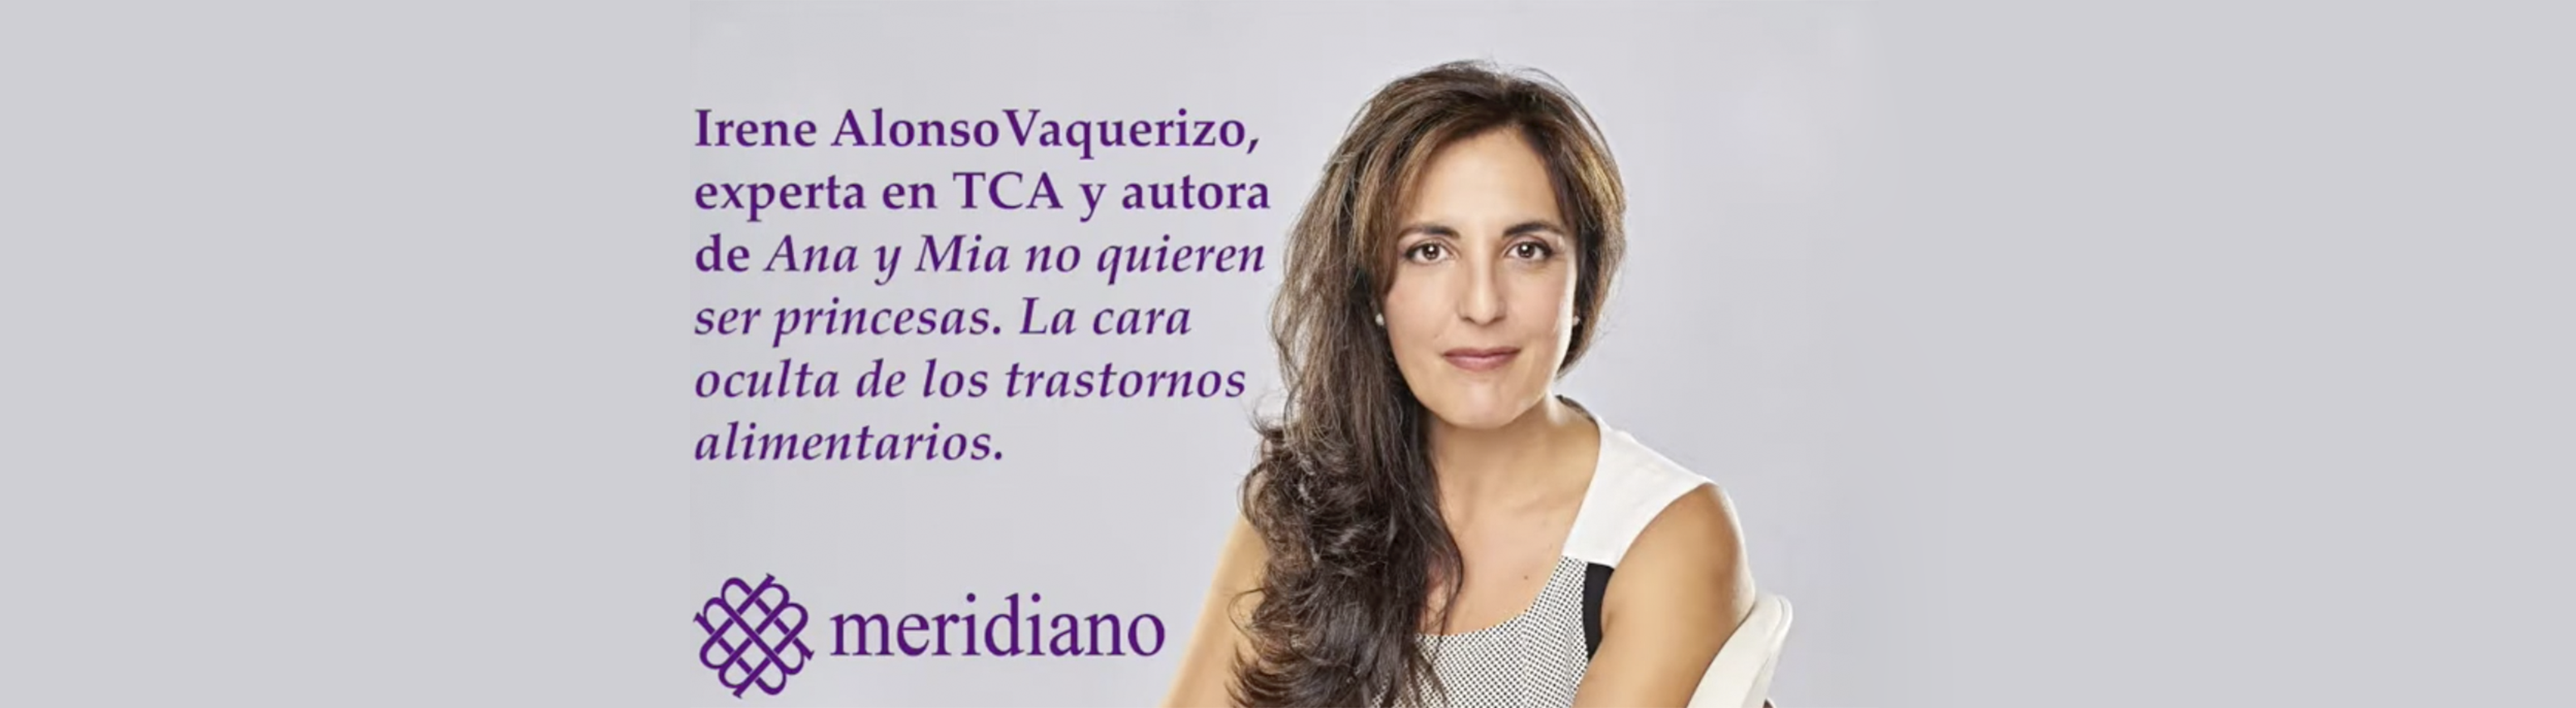 Entrevista a Irene Alonso Vaquerizo en COPE sobre la realidad de los trastornos alimentarios